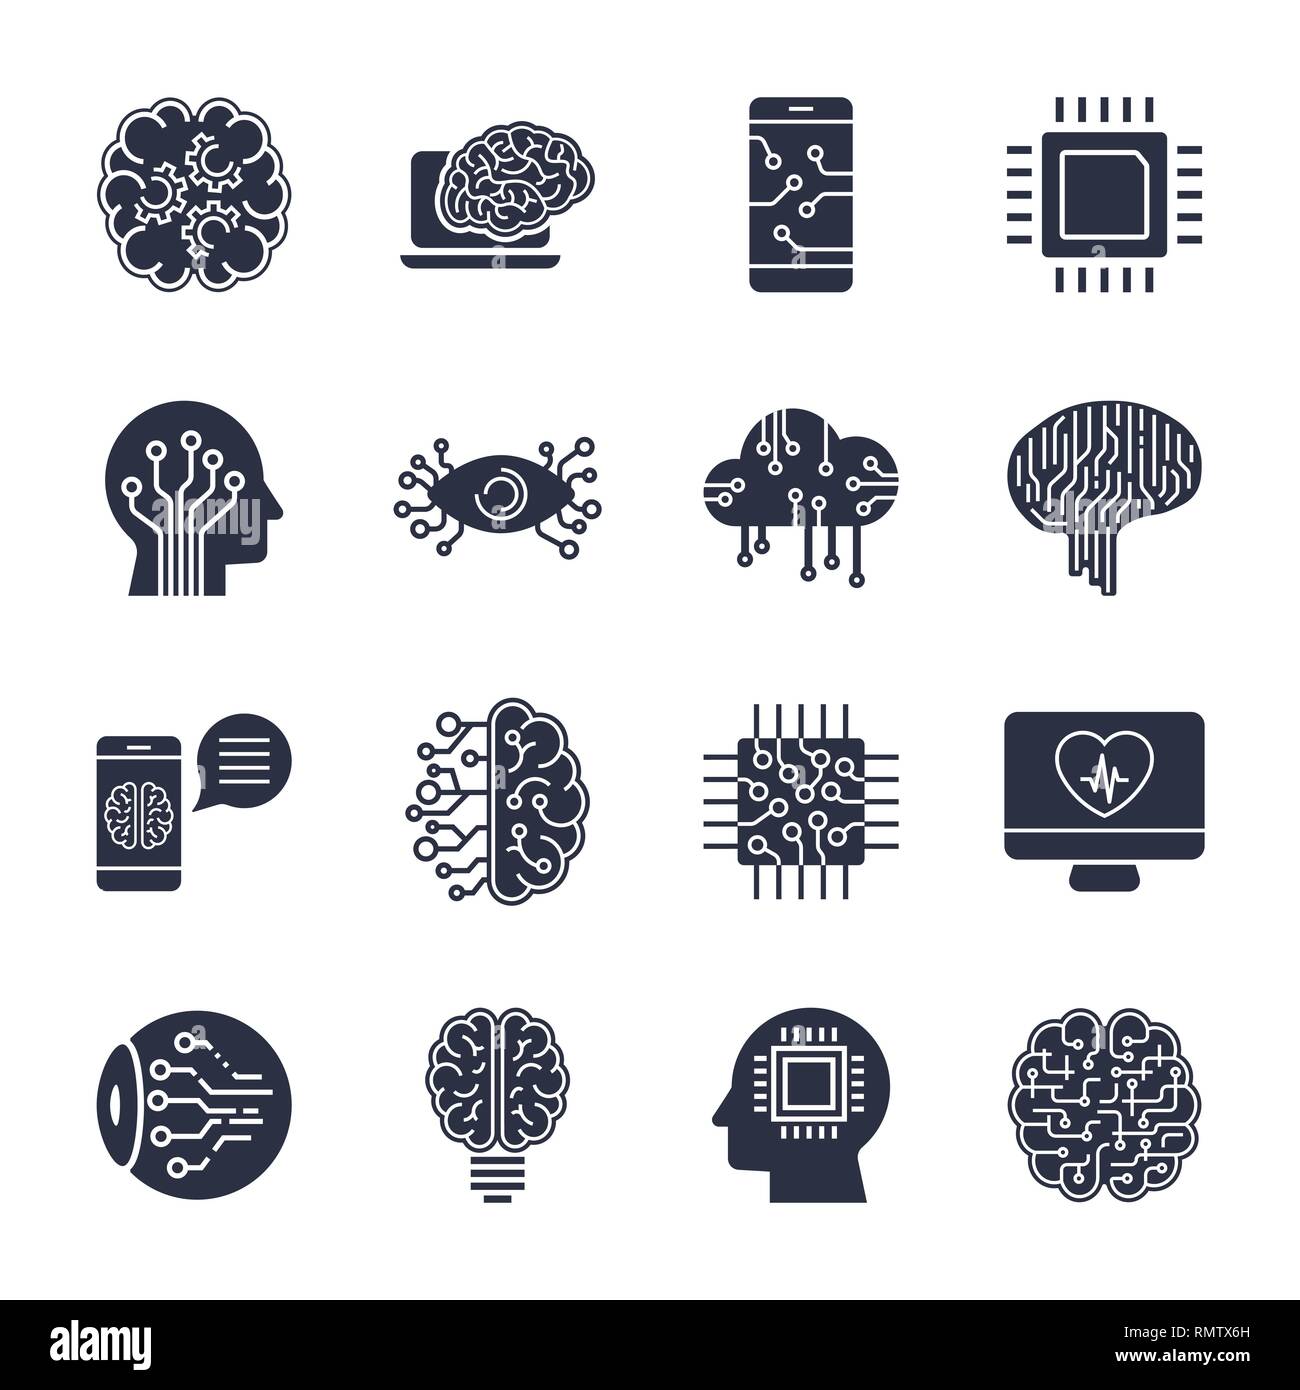 Einfacher Satz von künstlichen Intelligenz Zeile für Symbole enthält solche Ikonen wie Droid, Auge, Chip, Gehirn Stock Vektor